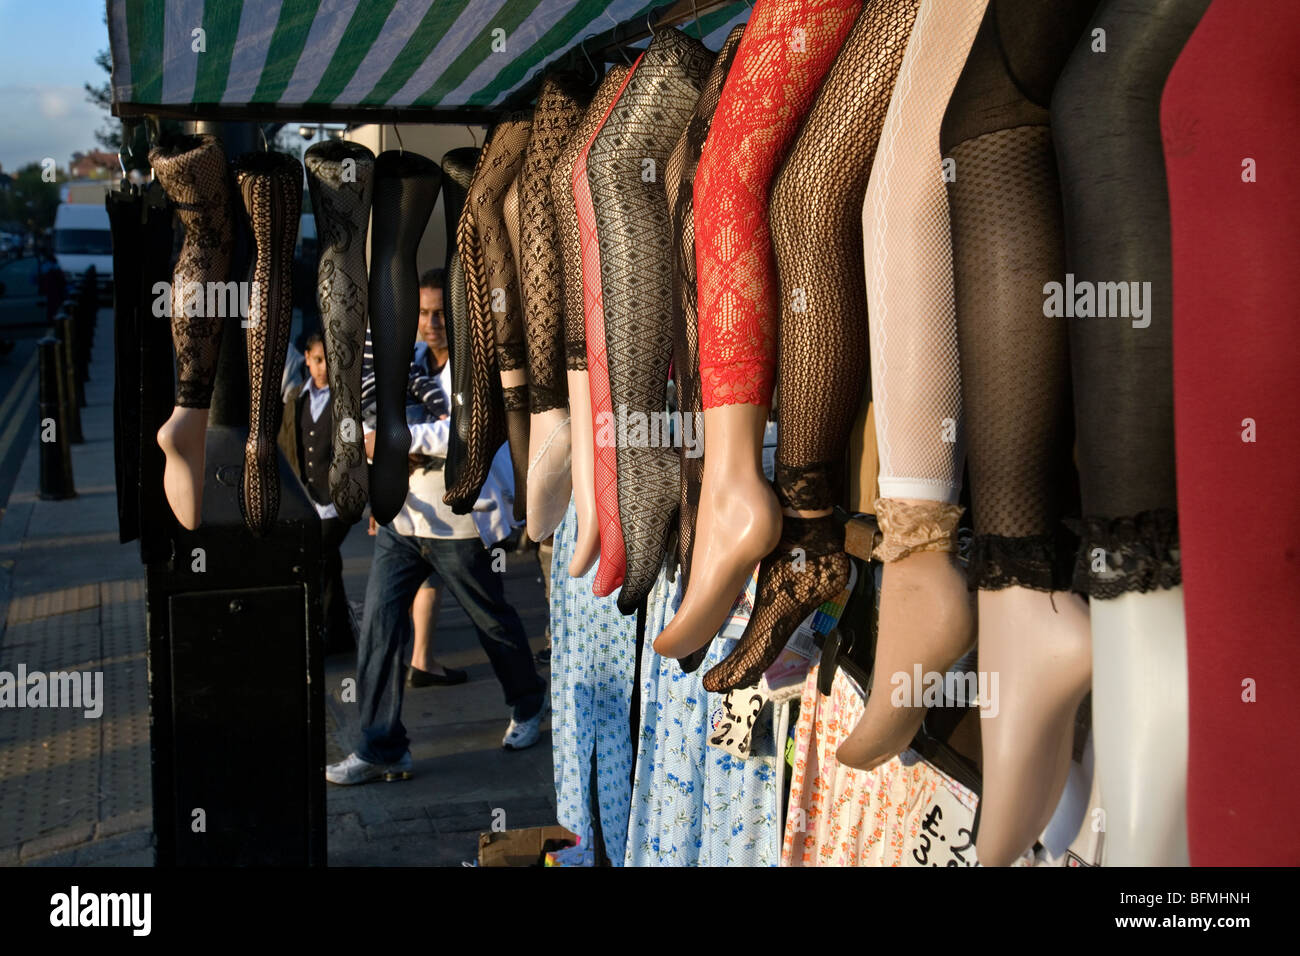 a market stall selling hosiery in whitechapel road, london Stock Photo